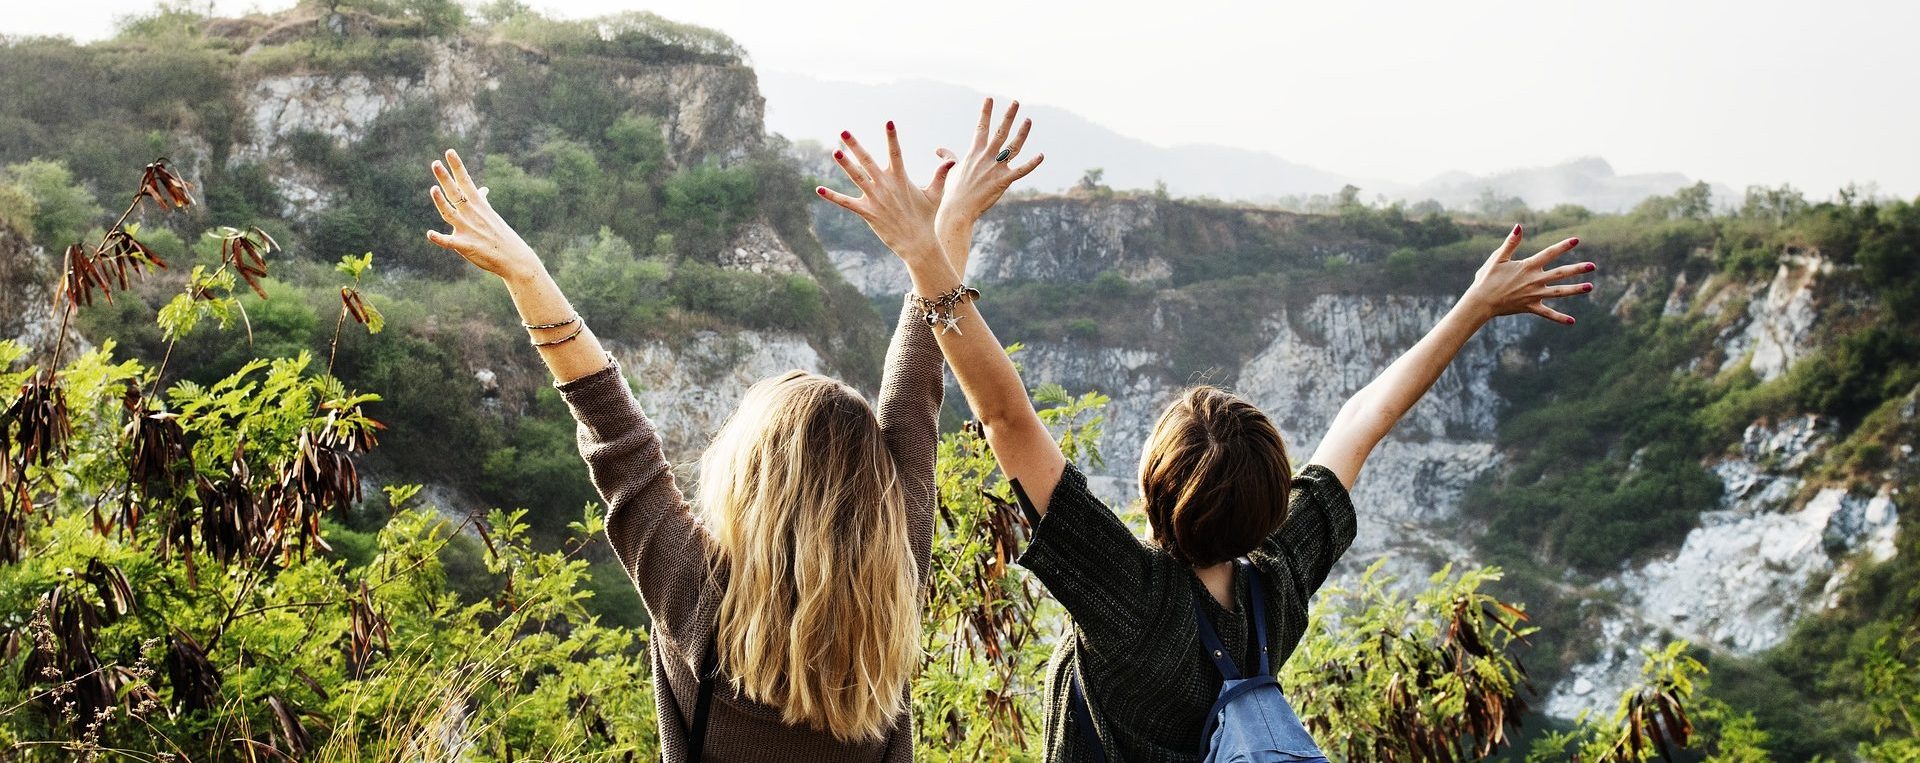 Zwei junge Frauen strecken die Arme in die Höhe und blicken auf das Gebirge vor ihnen.